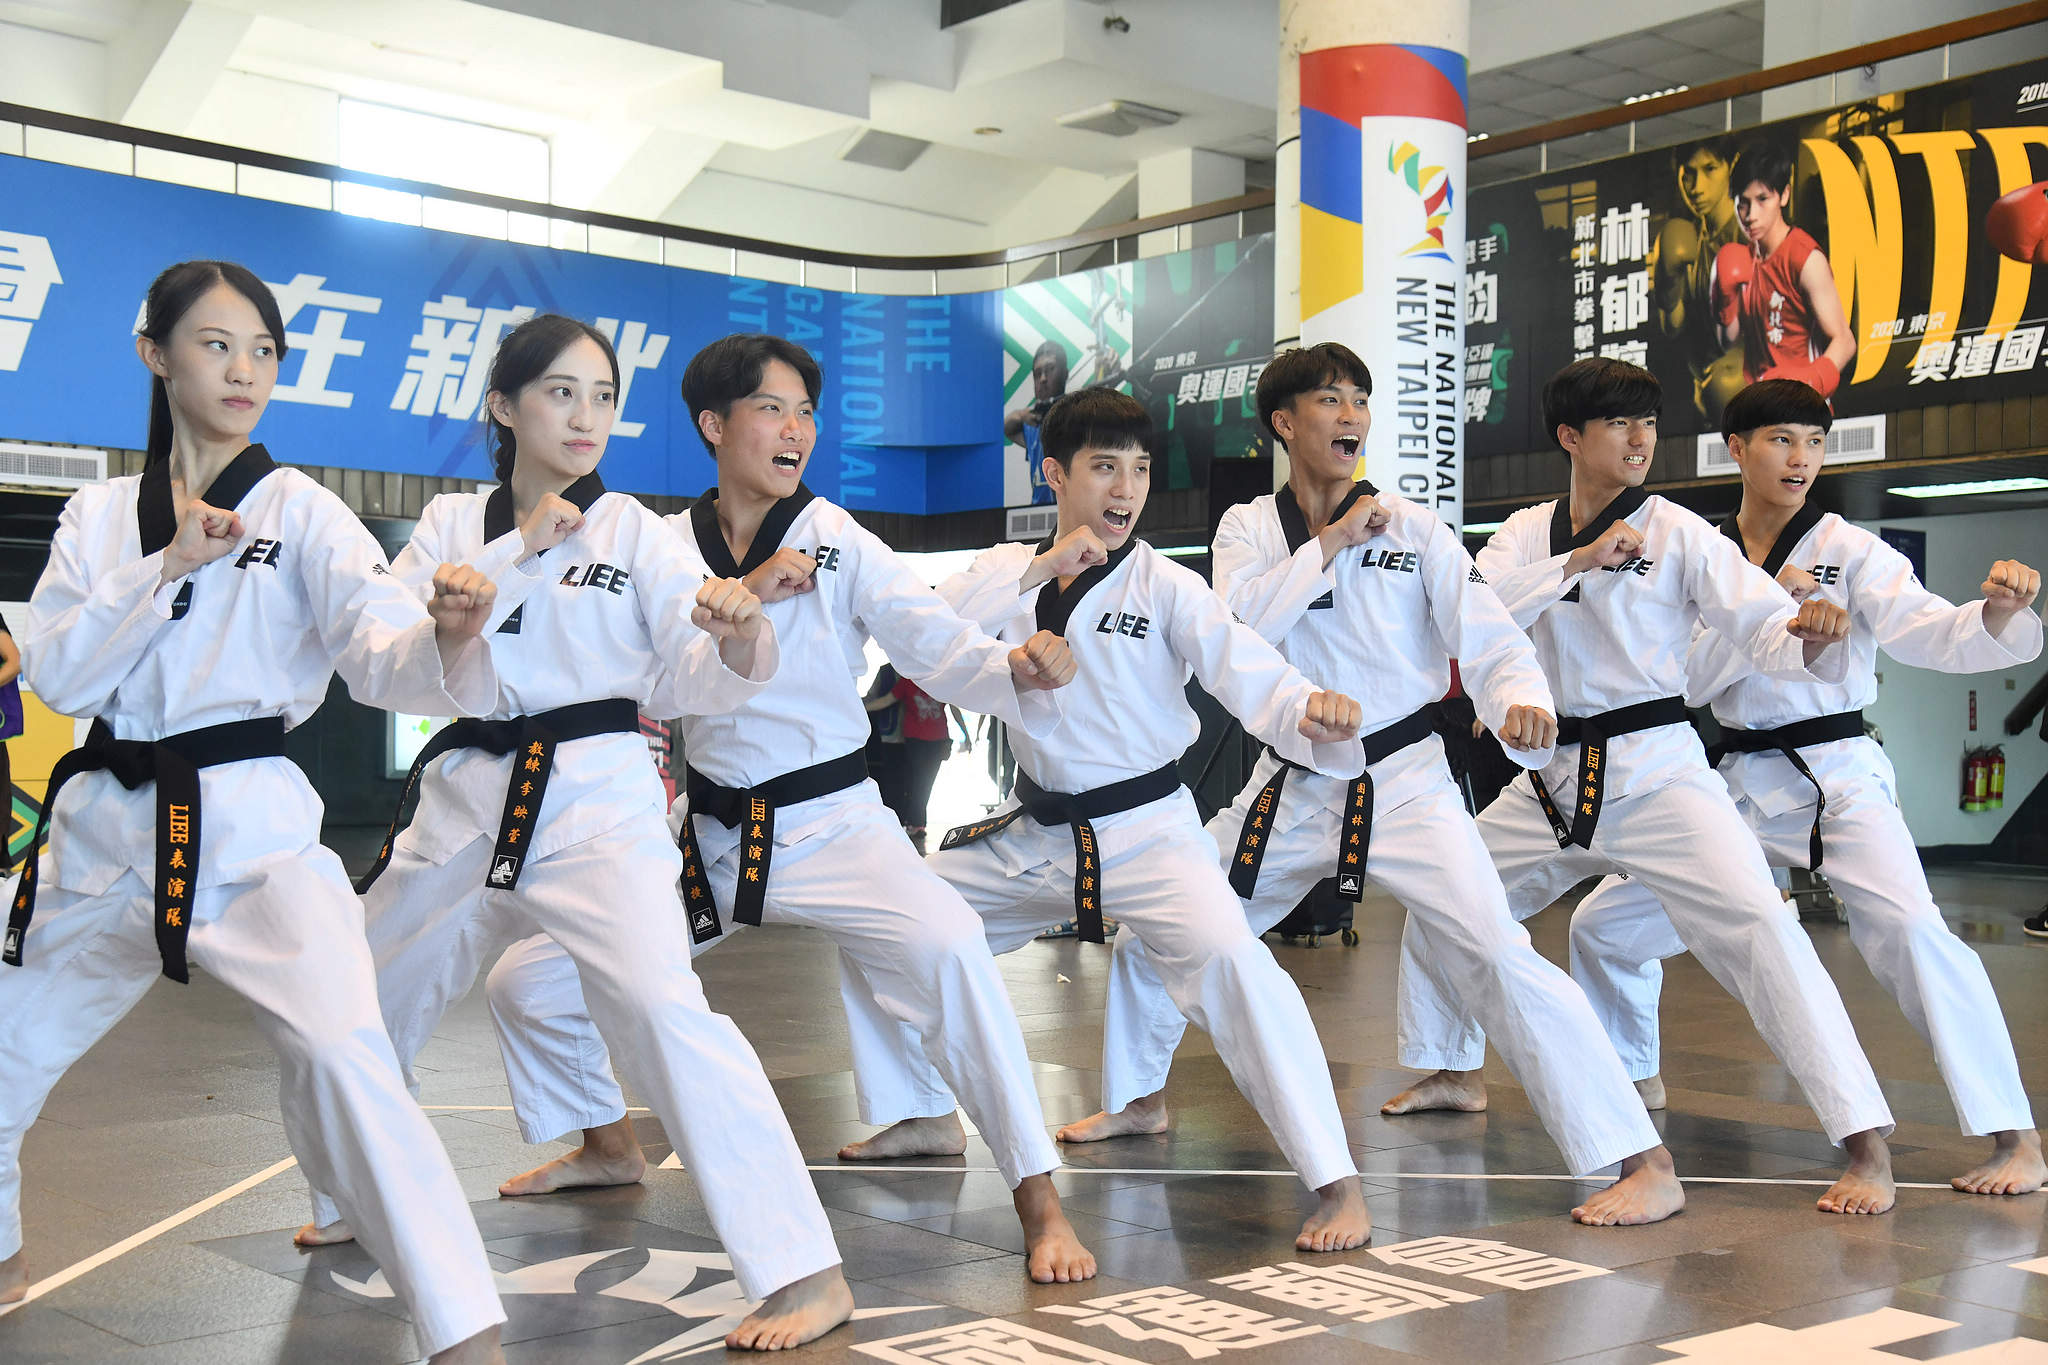 今日110全運會籌備處成立儀式，特別安排6月才成軍的「LIEE臺灣品勢表演隊」表演。